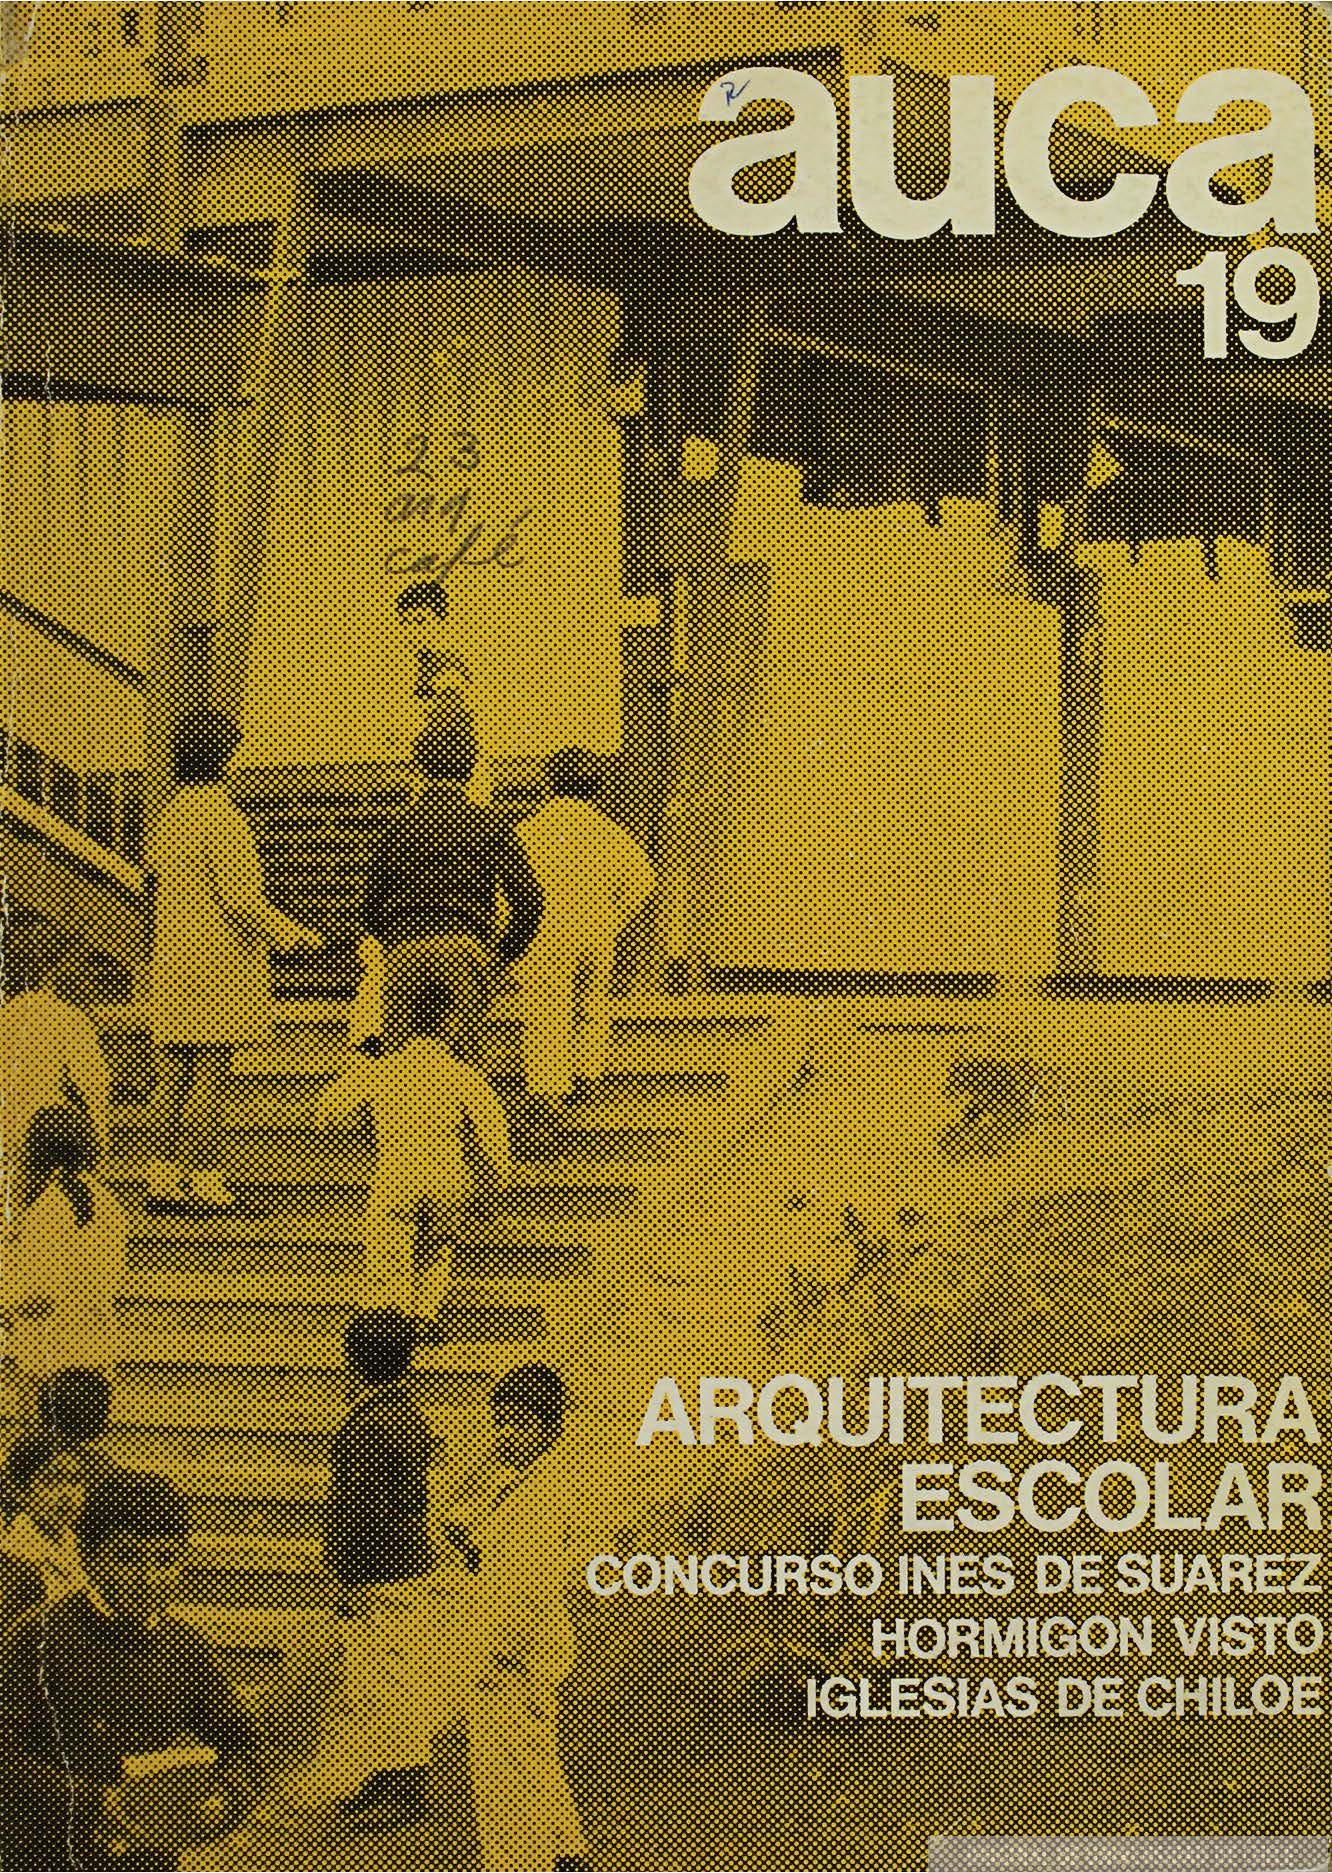 											Ver Núm. 19 (1970): Arquitectura escolar
										